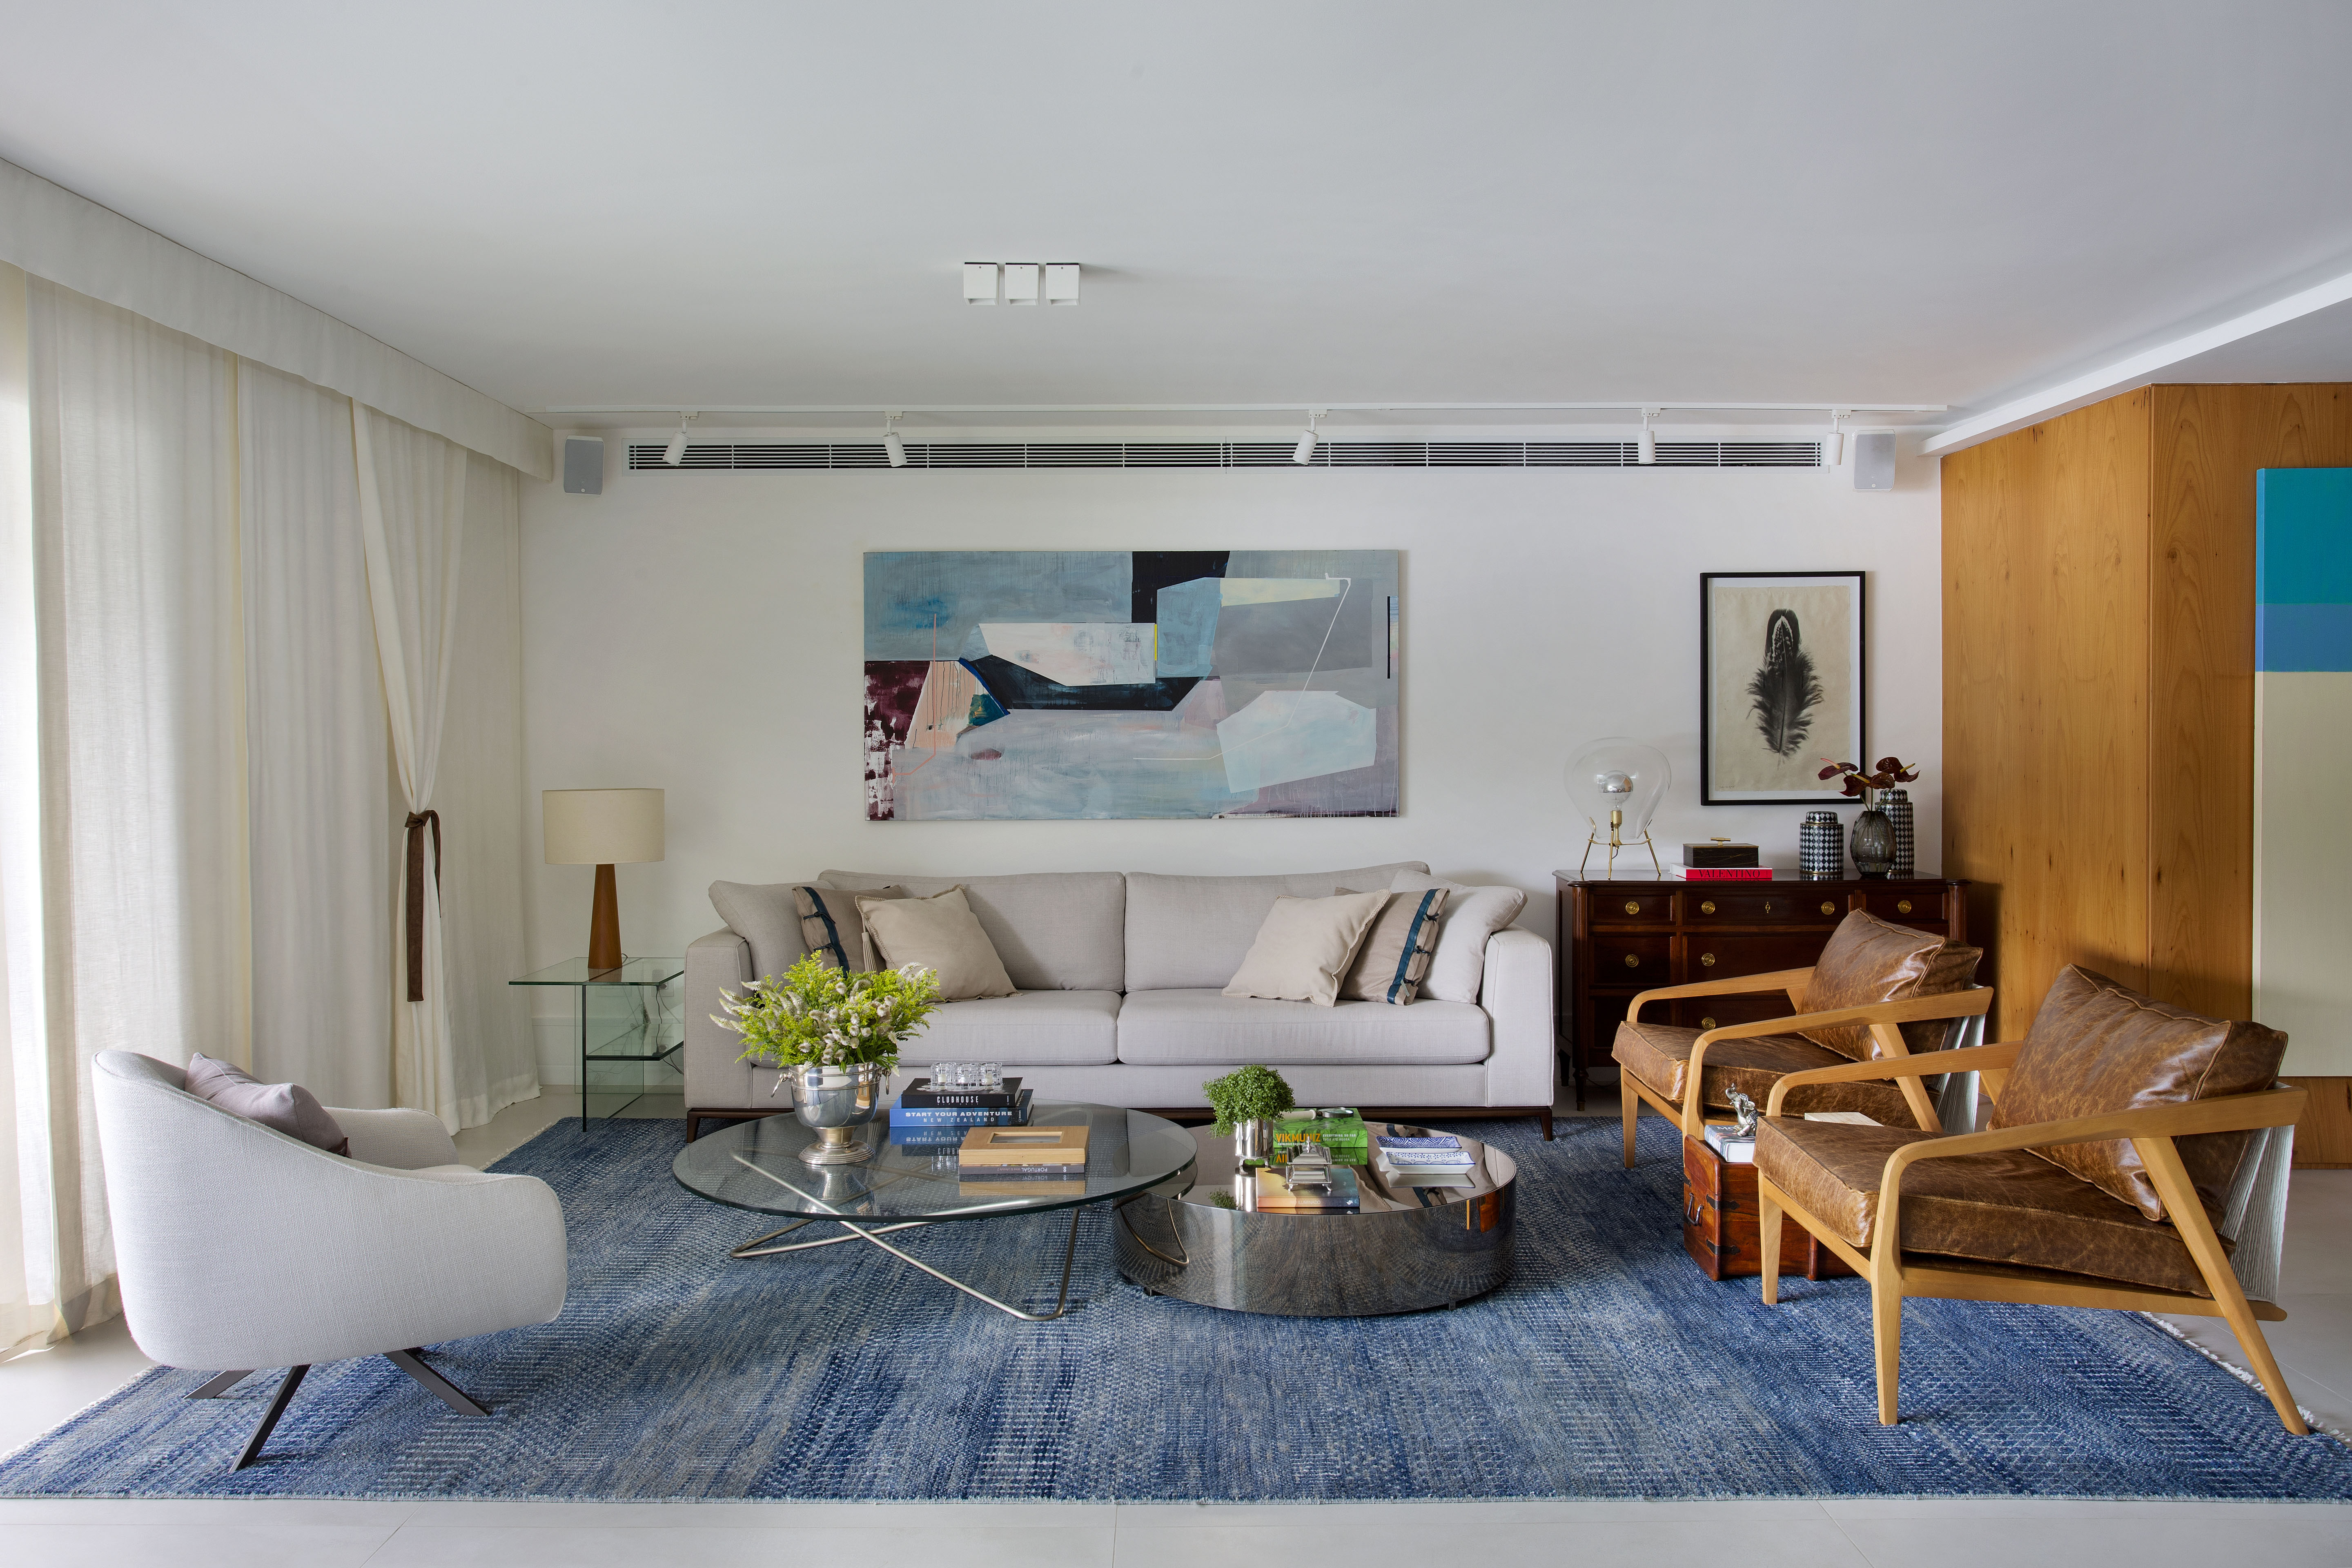 Sala de estar com sofá claro, tapete azul, quadros e cadeiras de madeira.